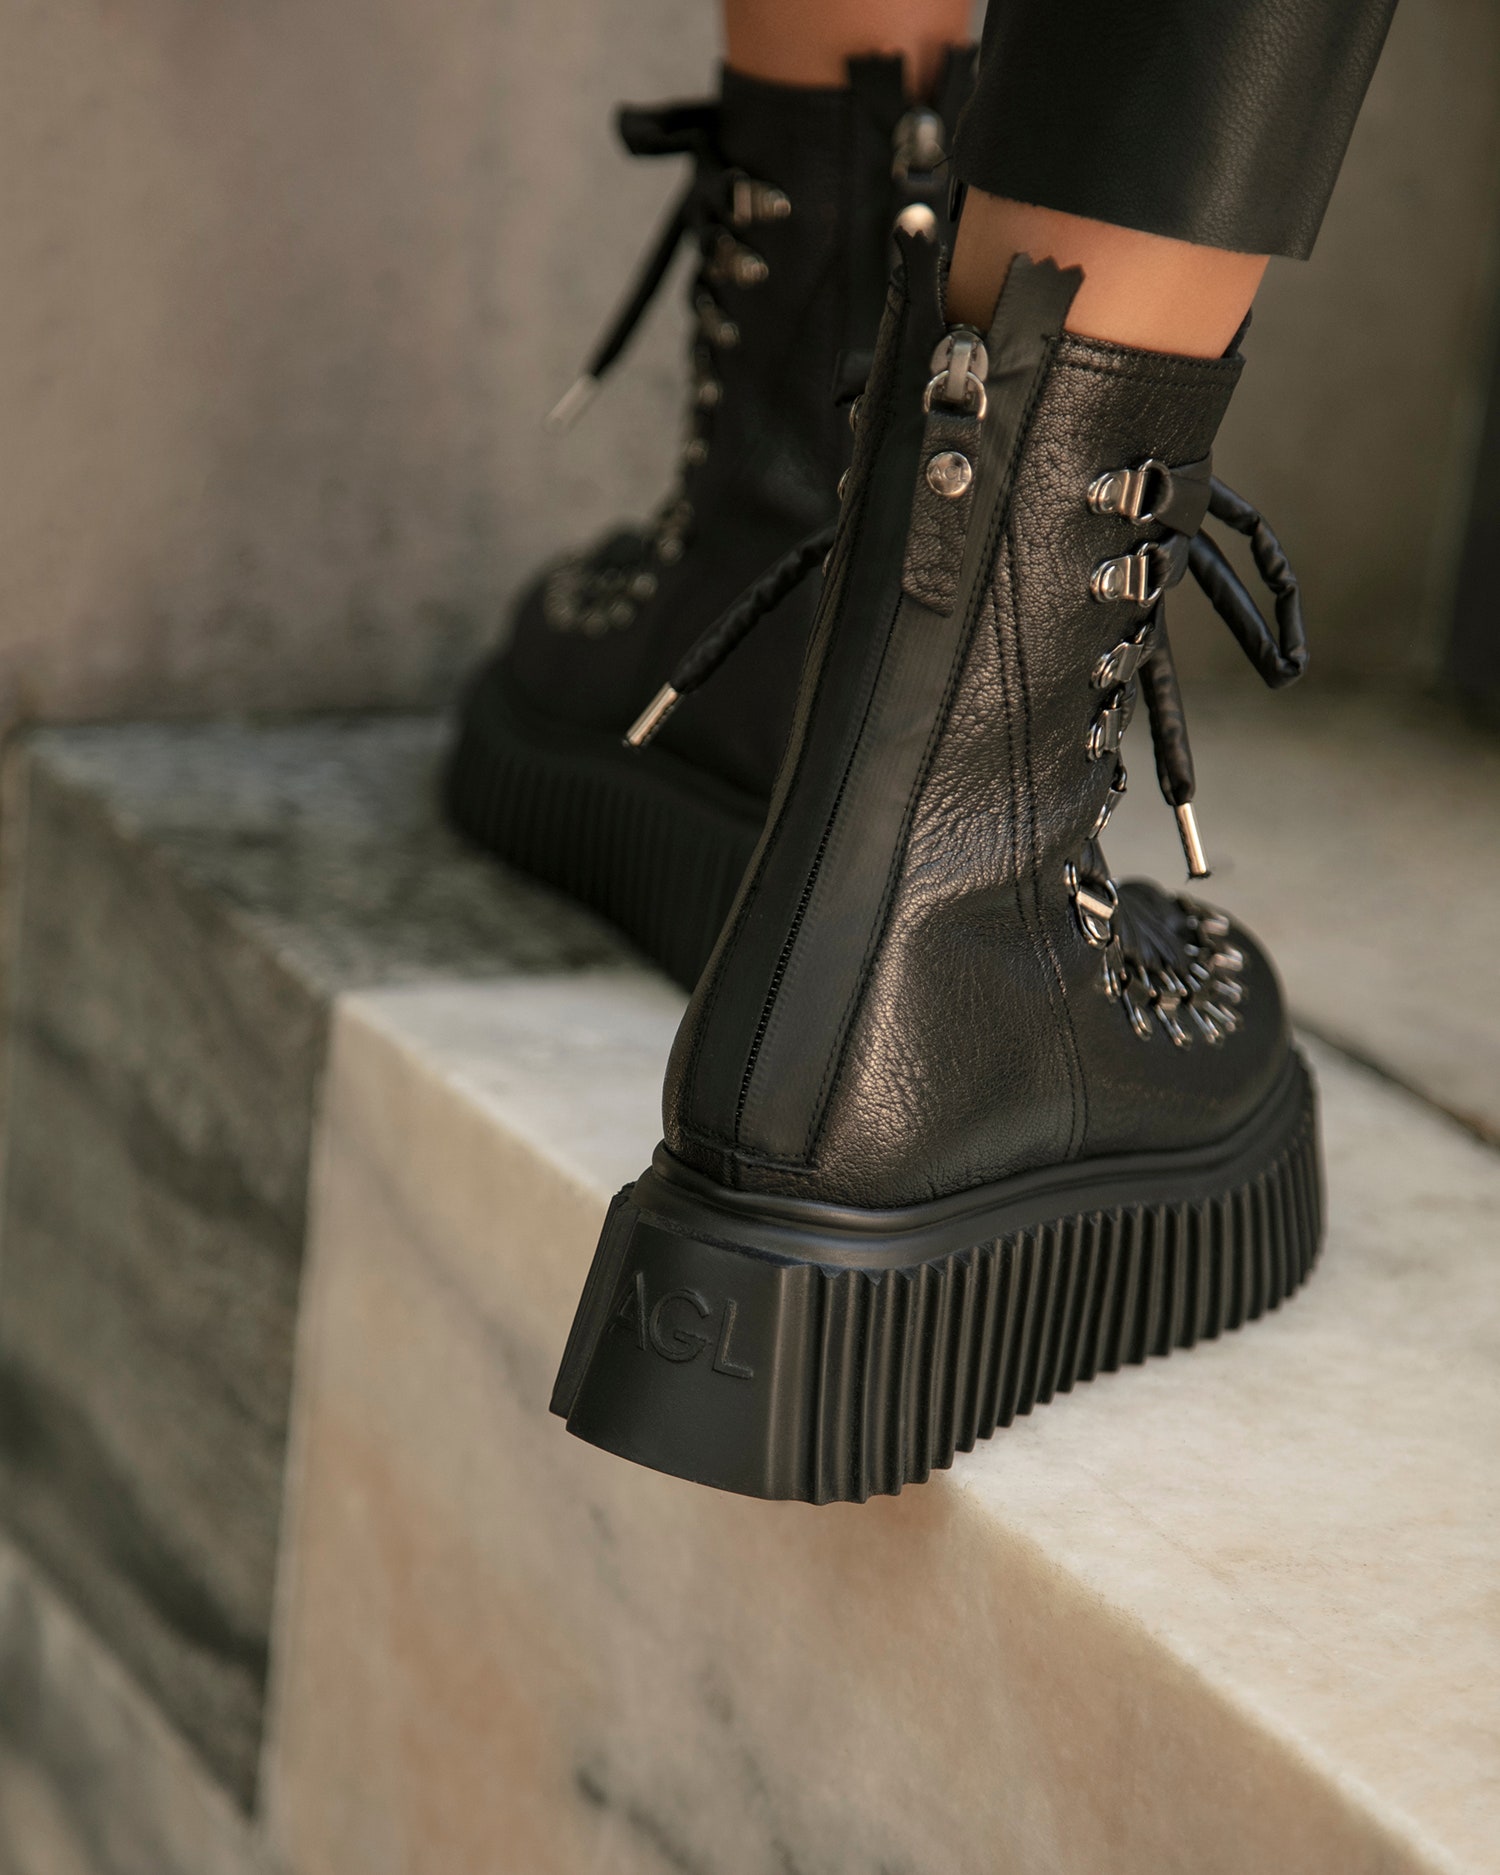 Новые брутальные высокие ботинки AGL на шнуровке в стиле гранж — новоерешение итальянского бренда для базового гардероба, которое подойдет как накаждый день, так и для особого случая